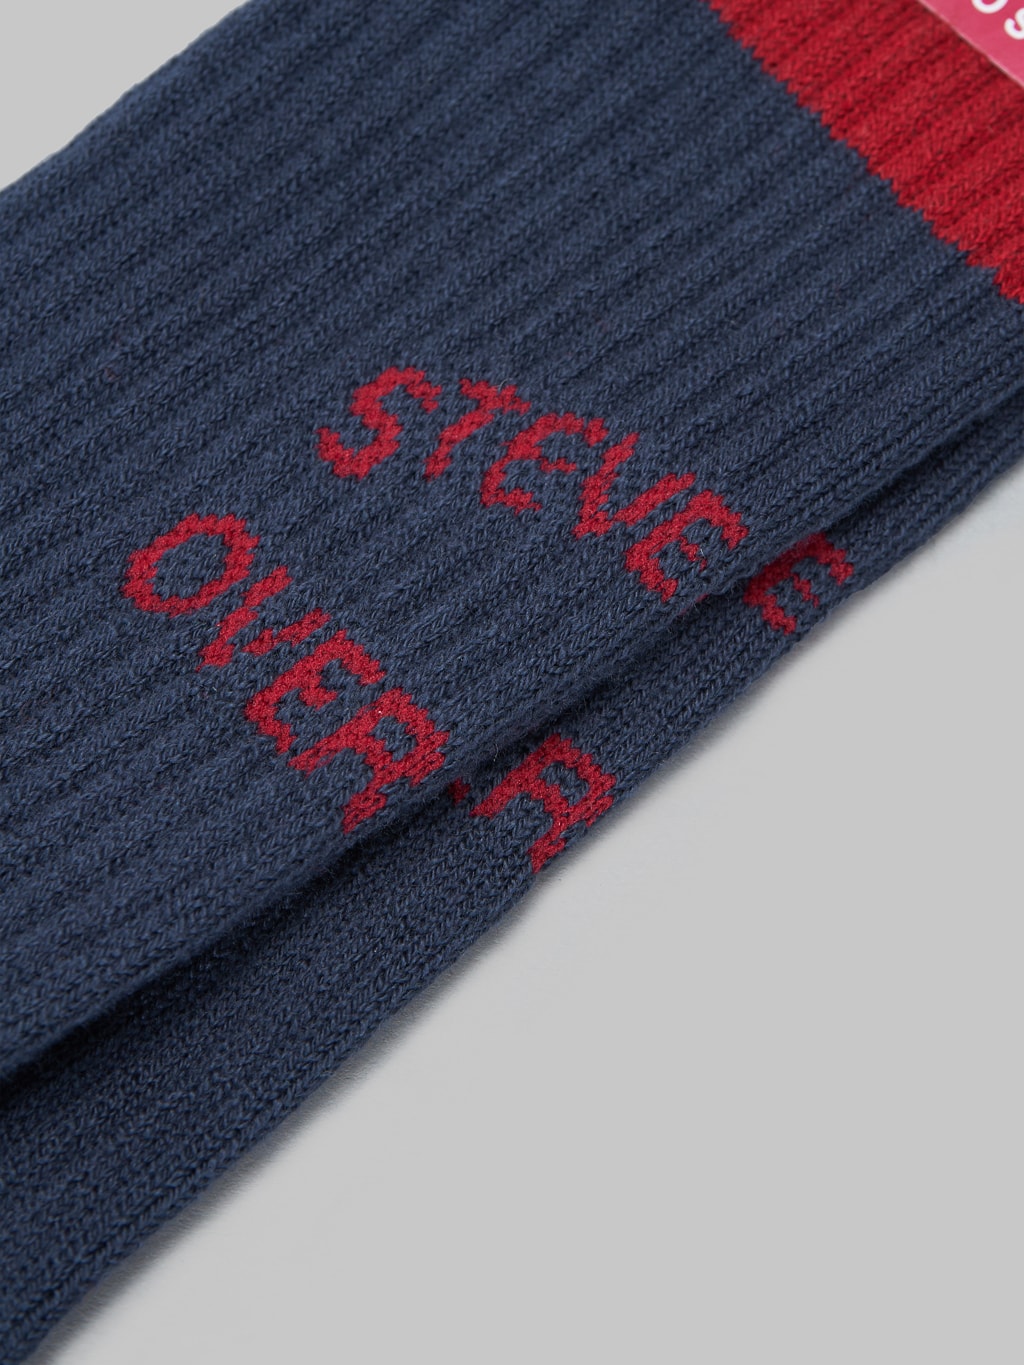 Stevenson Overall Athletic Socks navy brand woven logo